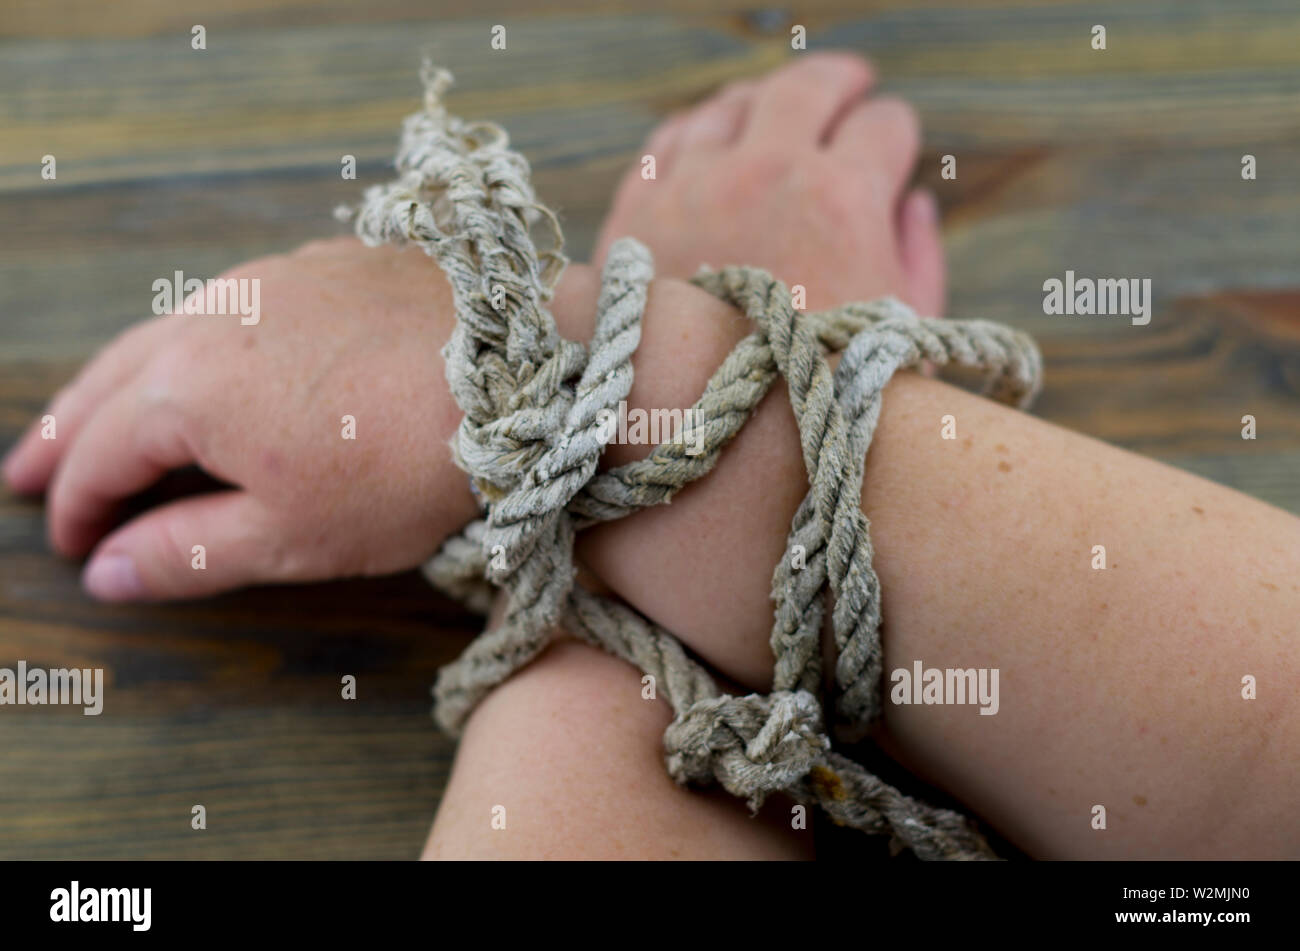 Die Frau Hände mit einem alten Seil gebunden, das Seil grau mit dem Alter ist und Entwirren an den Enden. Es ist möglich, das Bild so zu interpretieren, als Folter. Stockfoto